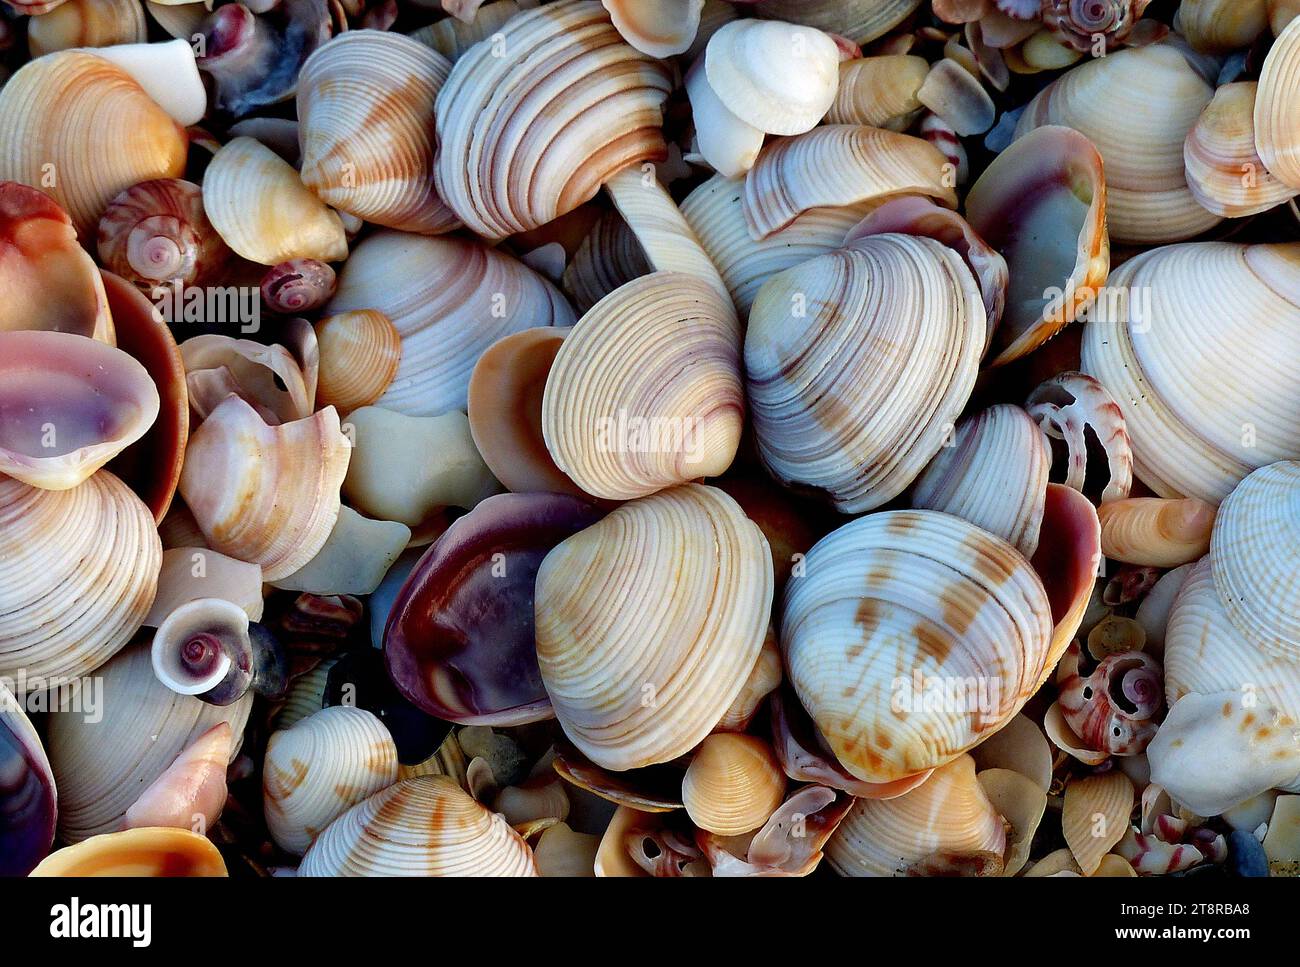 Shell Beach, Ein 'Shell Beach' ist ein Meeresstrand, an dem regelmäßig eine ungewöhnlich große Ansammlung von Muscheln gespült wird. Muscheln sind meist die toten leeren Muscheln von Meeresmuscheln, können aber auch Tests oder Muscheln anderer Arten von Meerestieren umfassen Stockfoto